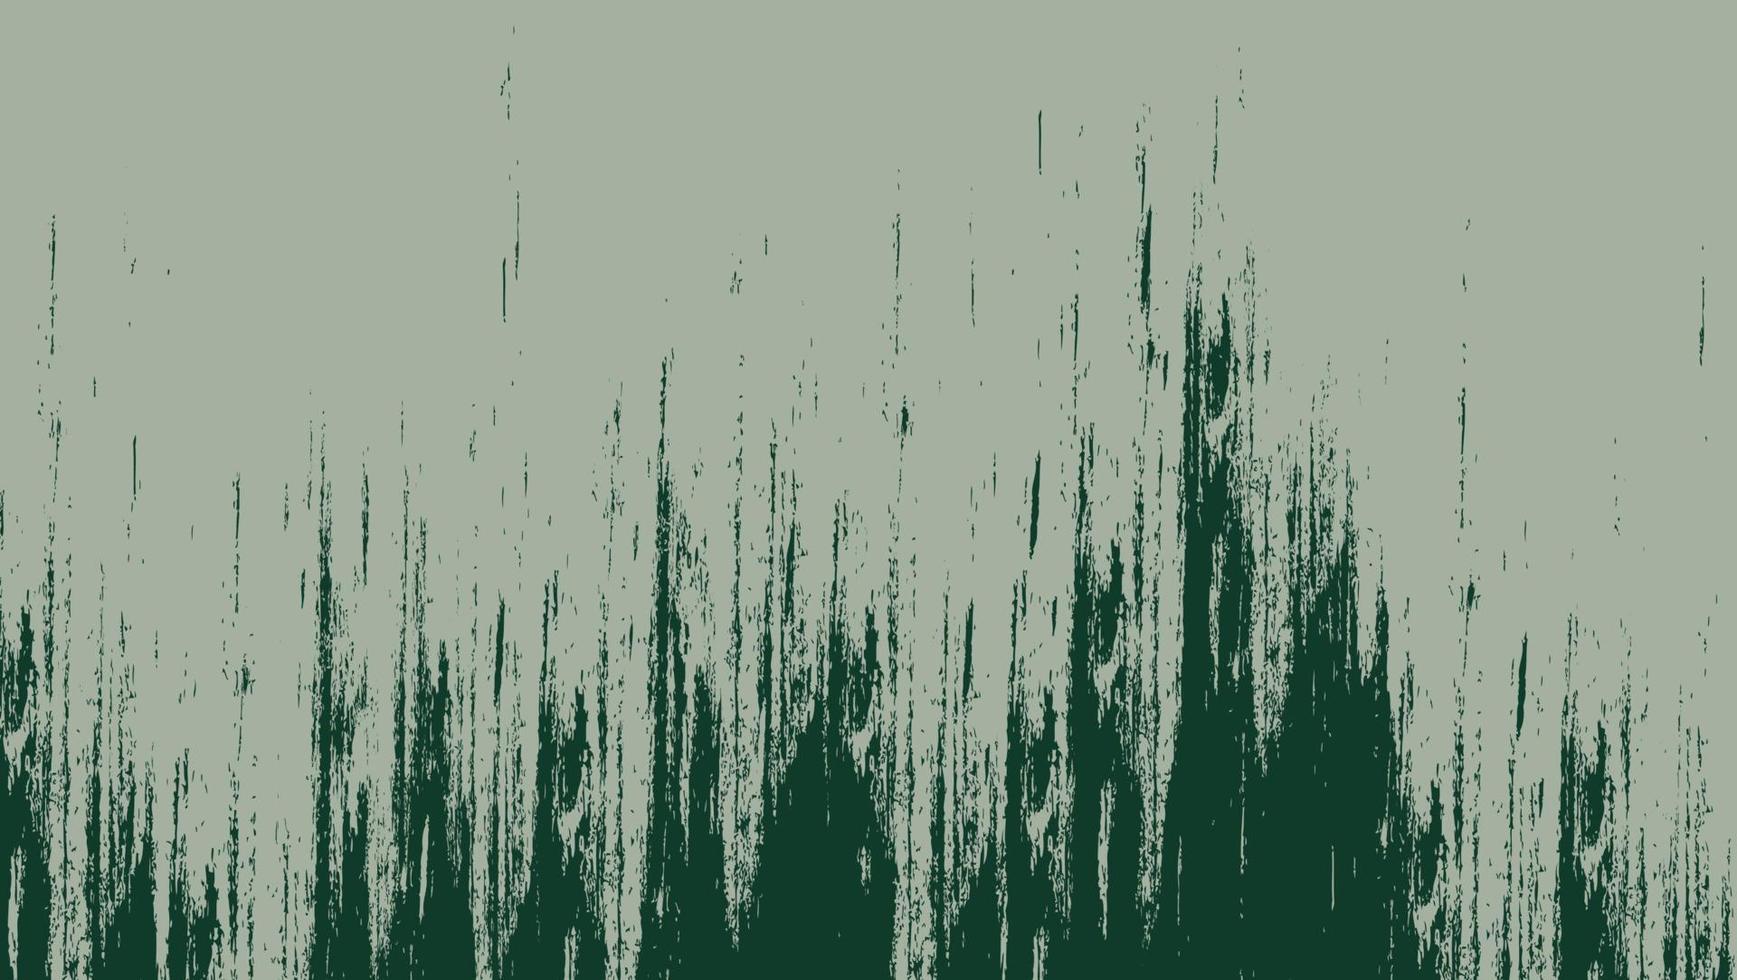 abstraktes dunkelgrünes Schmutzbeschaffenheits-Hintergrunddesign vektor